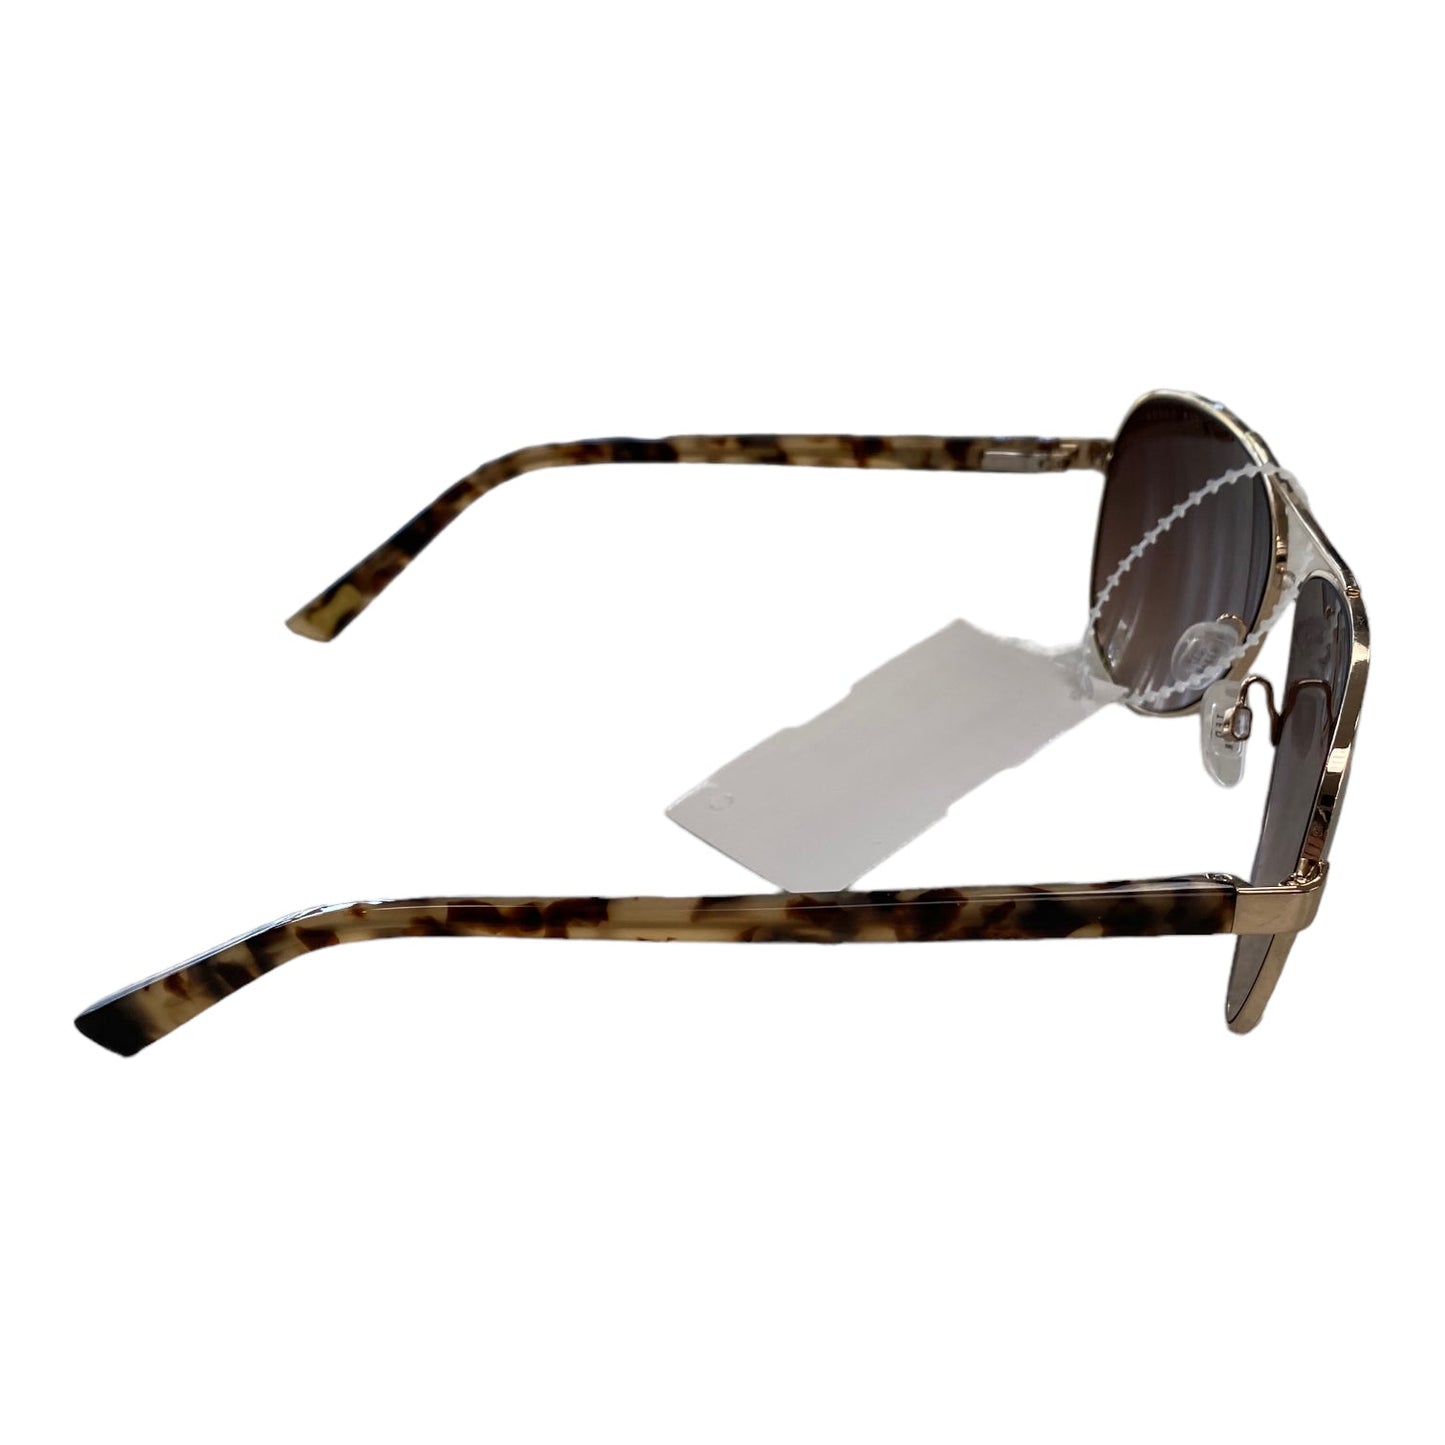 Sunglasses Designer Ted Baker